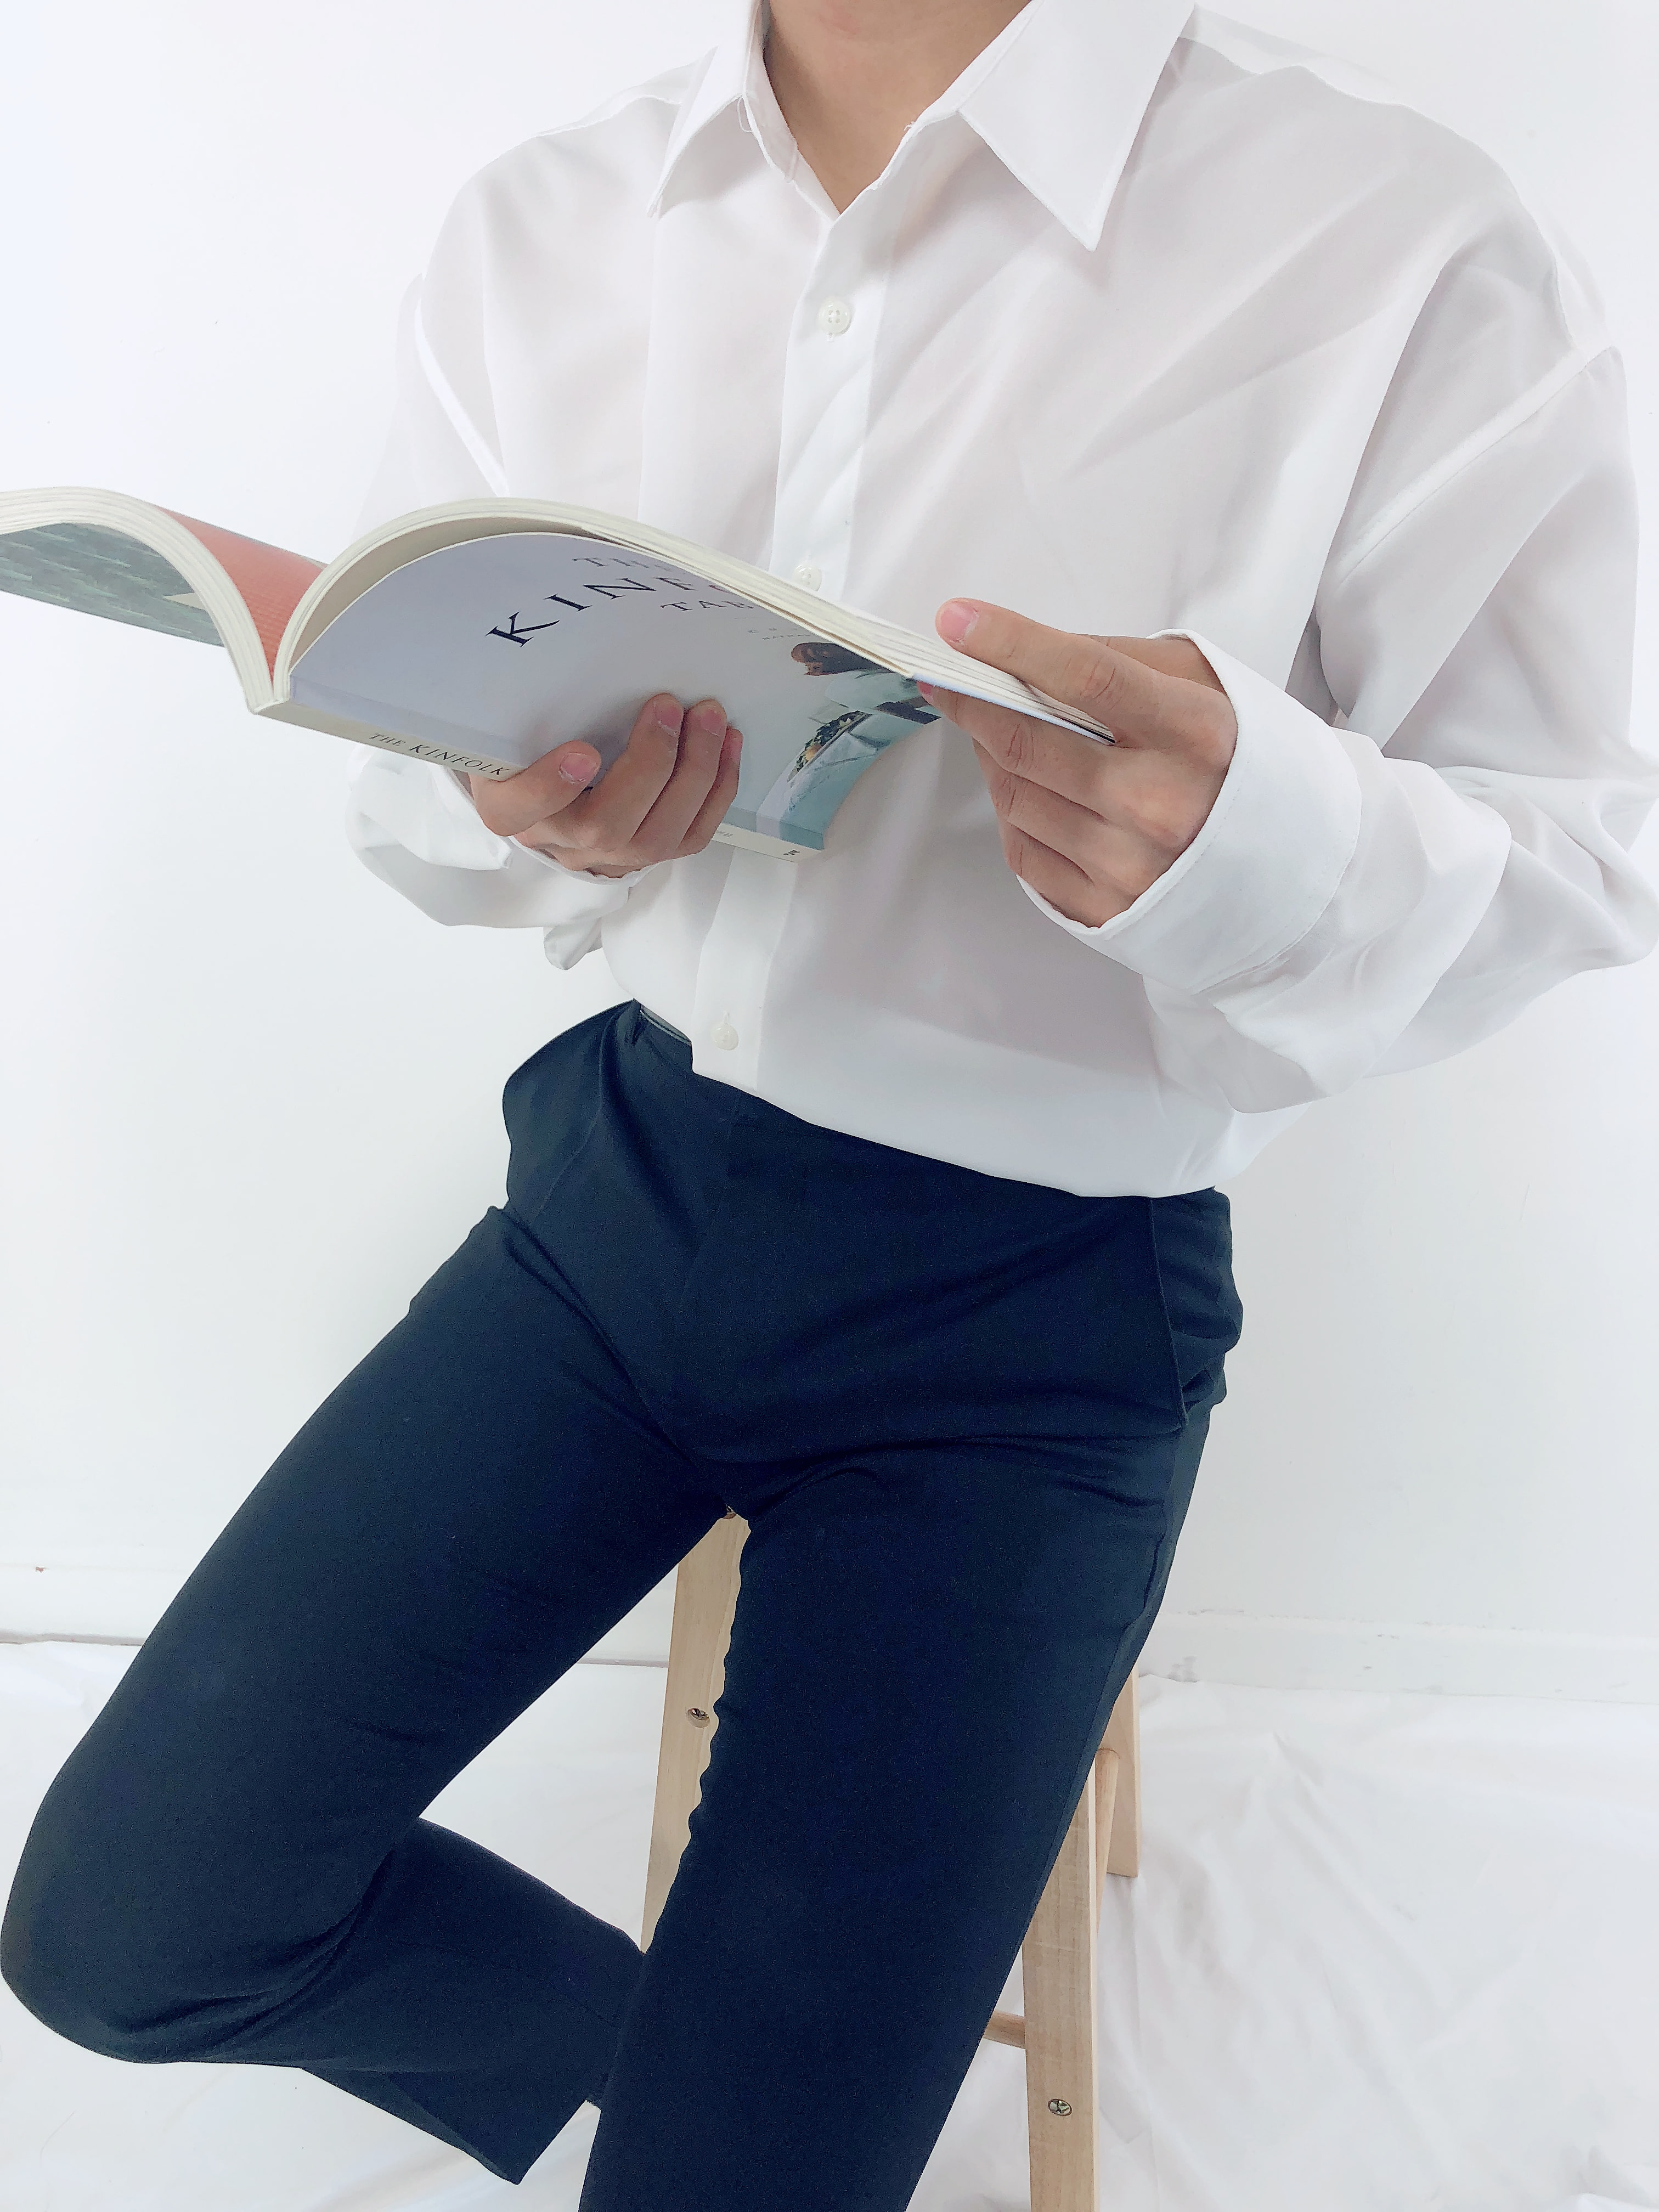 제이드 오버셔츠 무지 2Color(흰색,남색) Free size 남자 정장셔츠 캐쥬얼 셔츠